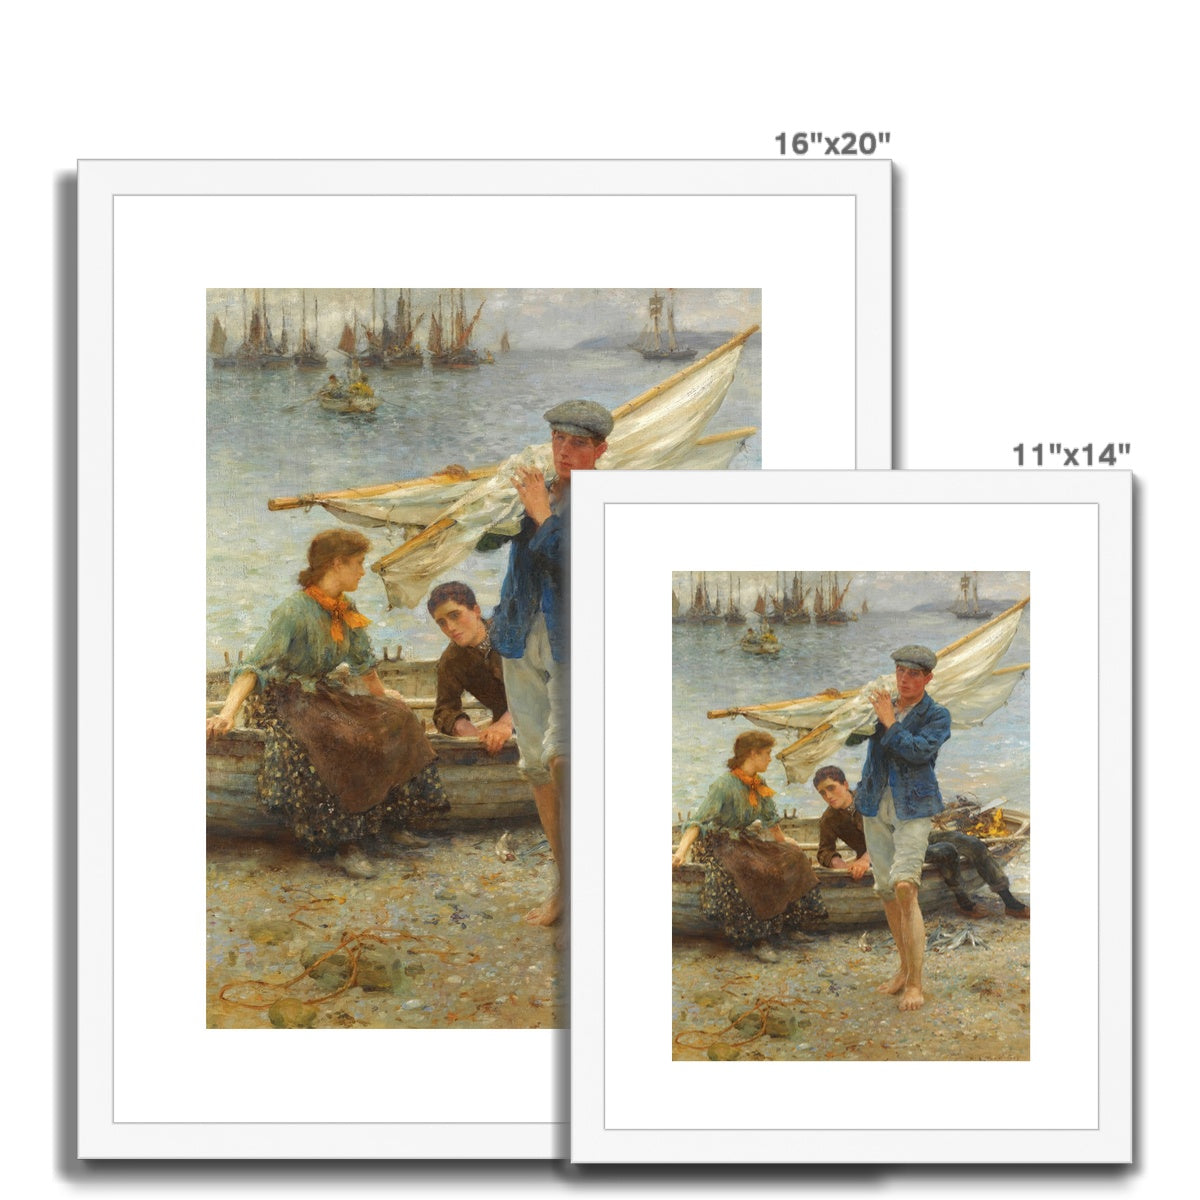 Return from Fishing by Henry Scott Tuke. Framed Open Edition Fine Art Print. Historic Art